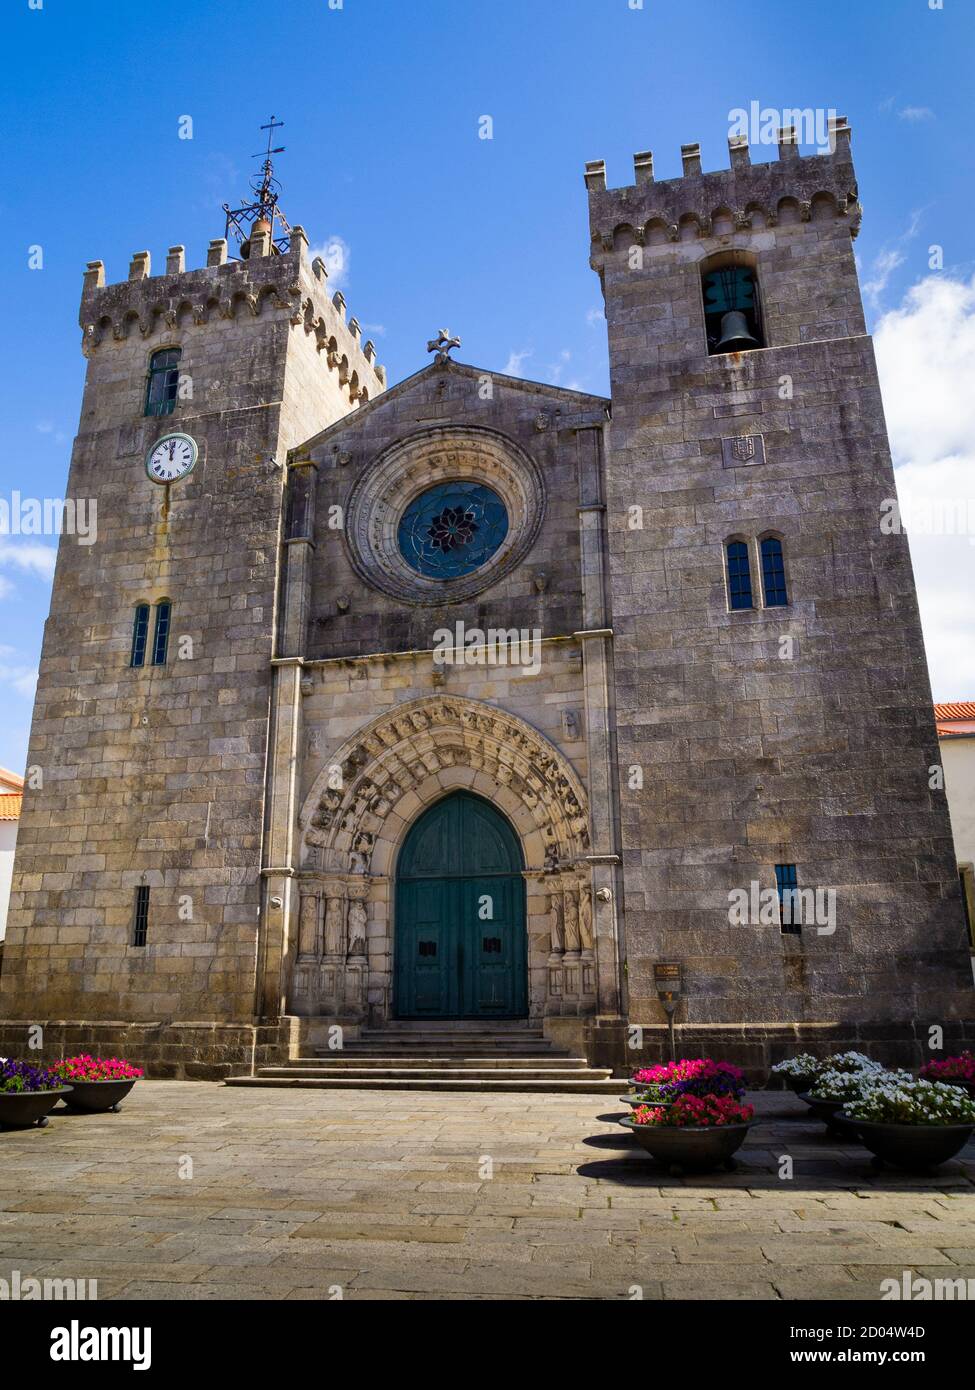 Cathédrale de Viana do Castelo (Portugais: Igreja Matriz de Viana do Castelo/Catedral de Viana do Castelo/Sé de Viana do Castelo), l'ap du XVe siècle Banque D'Images